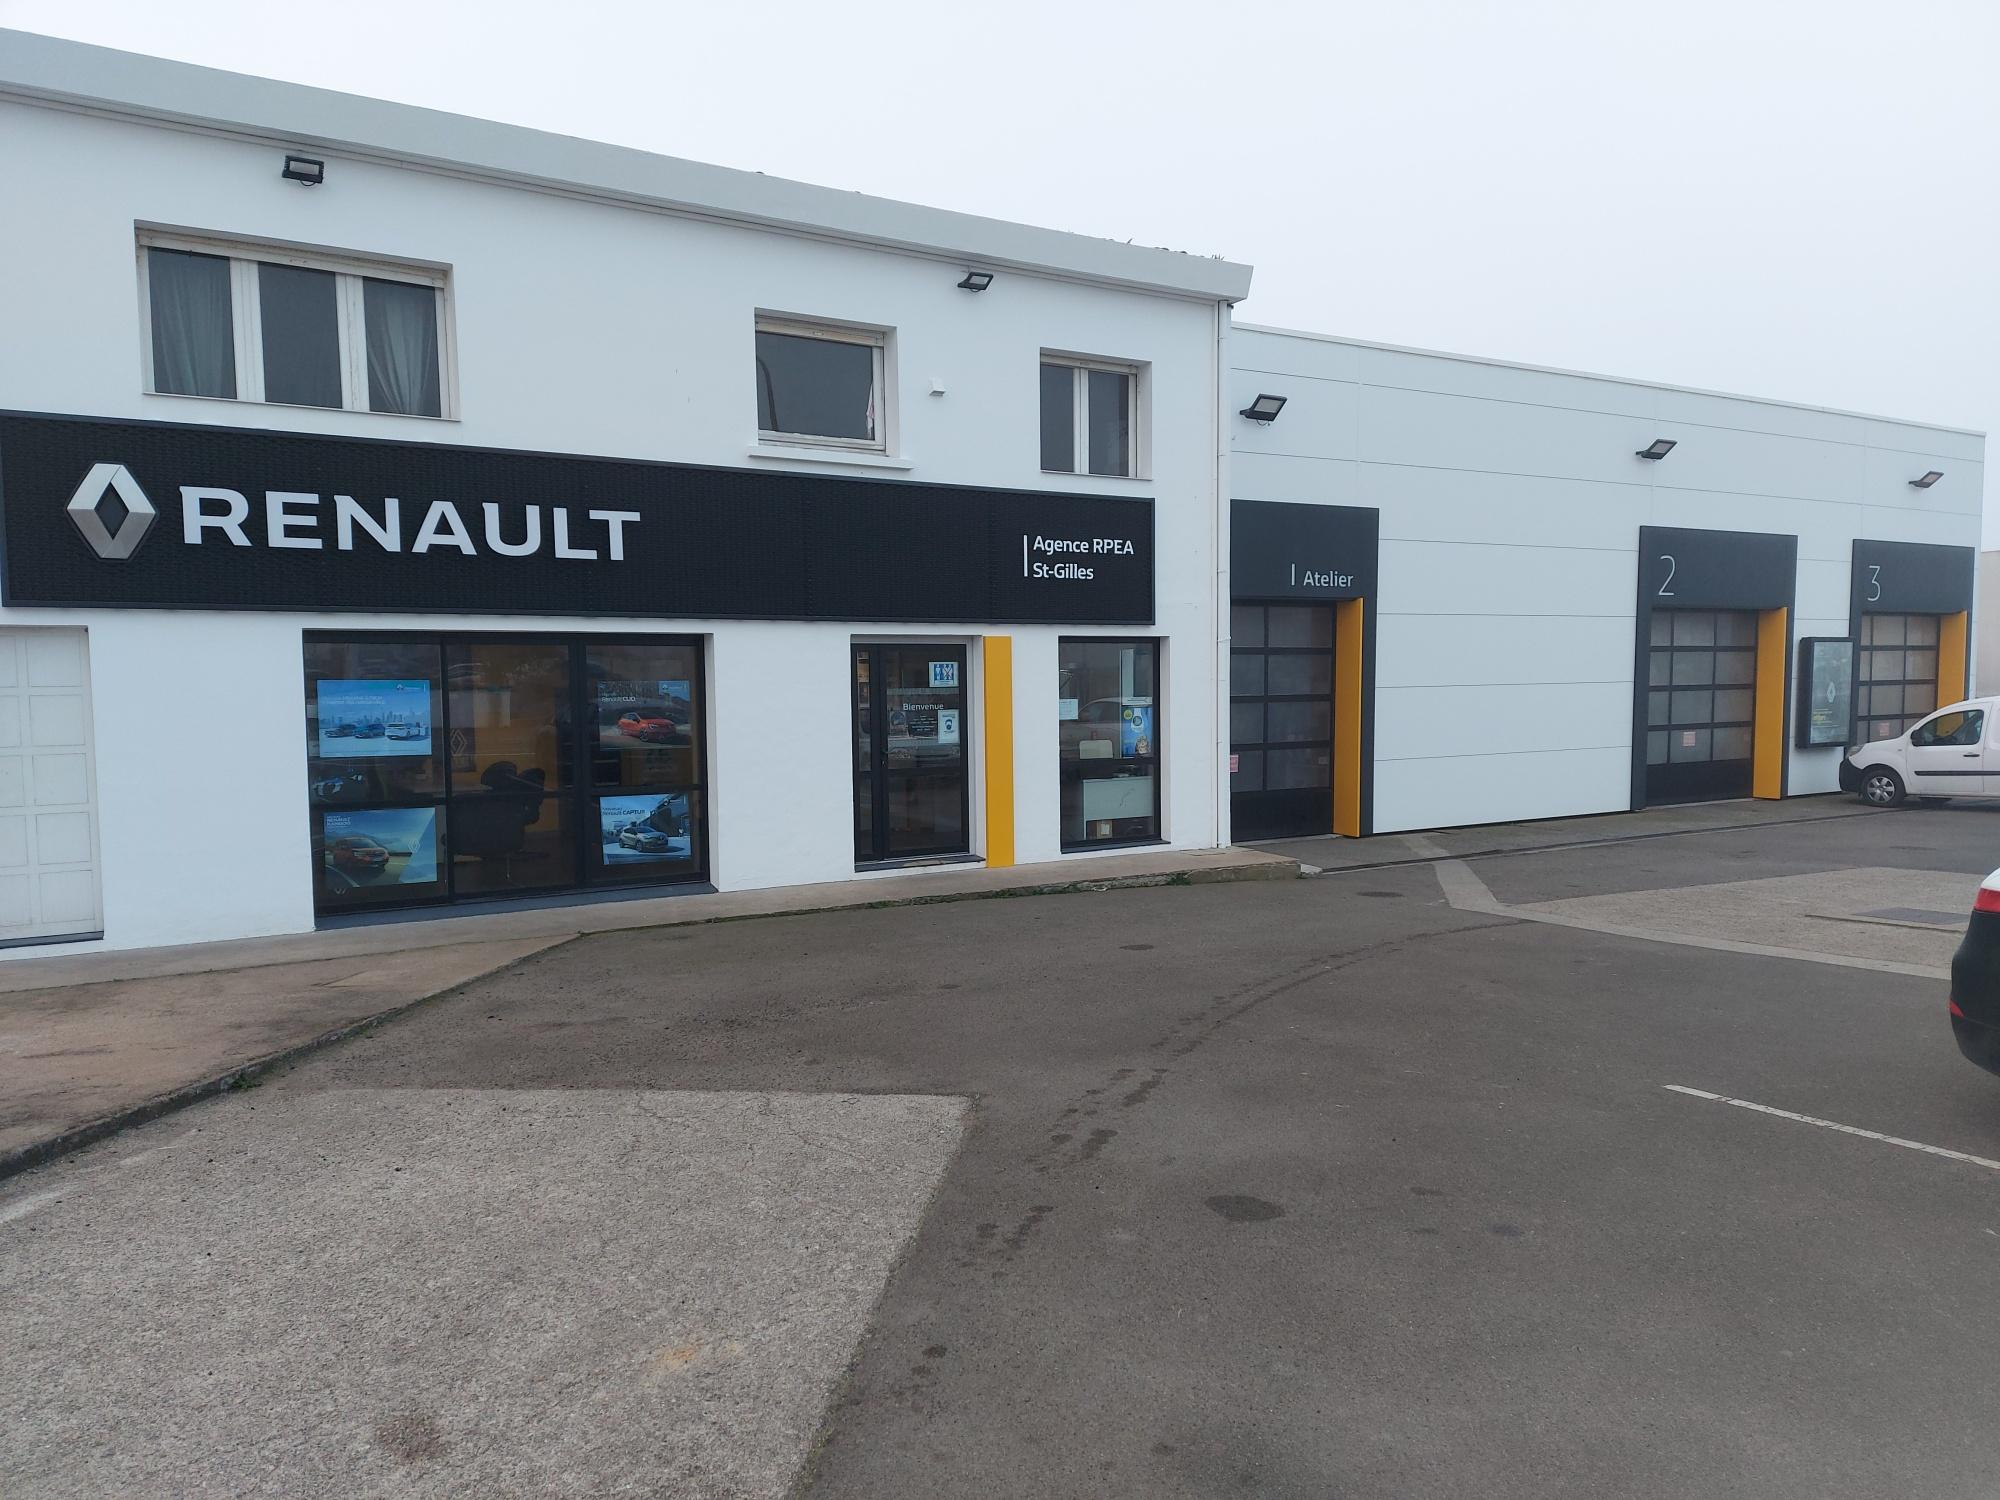 Garage Renault/dacia Rond Point De L'europe Automobiles Saint Gilles Croix De Vie